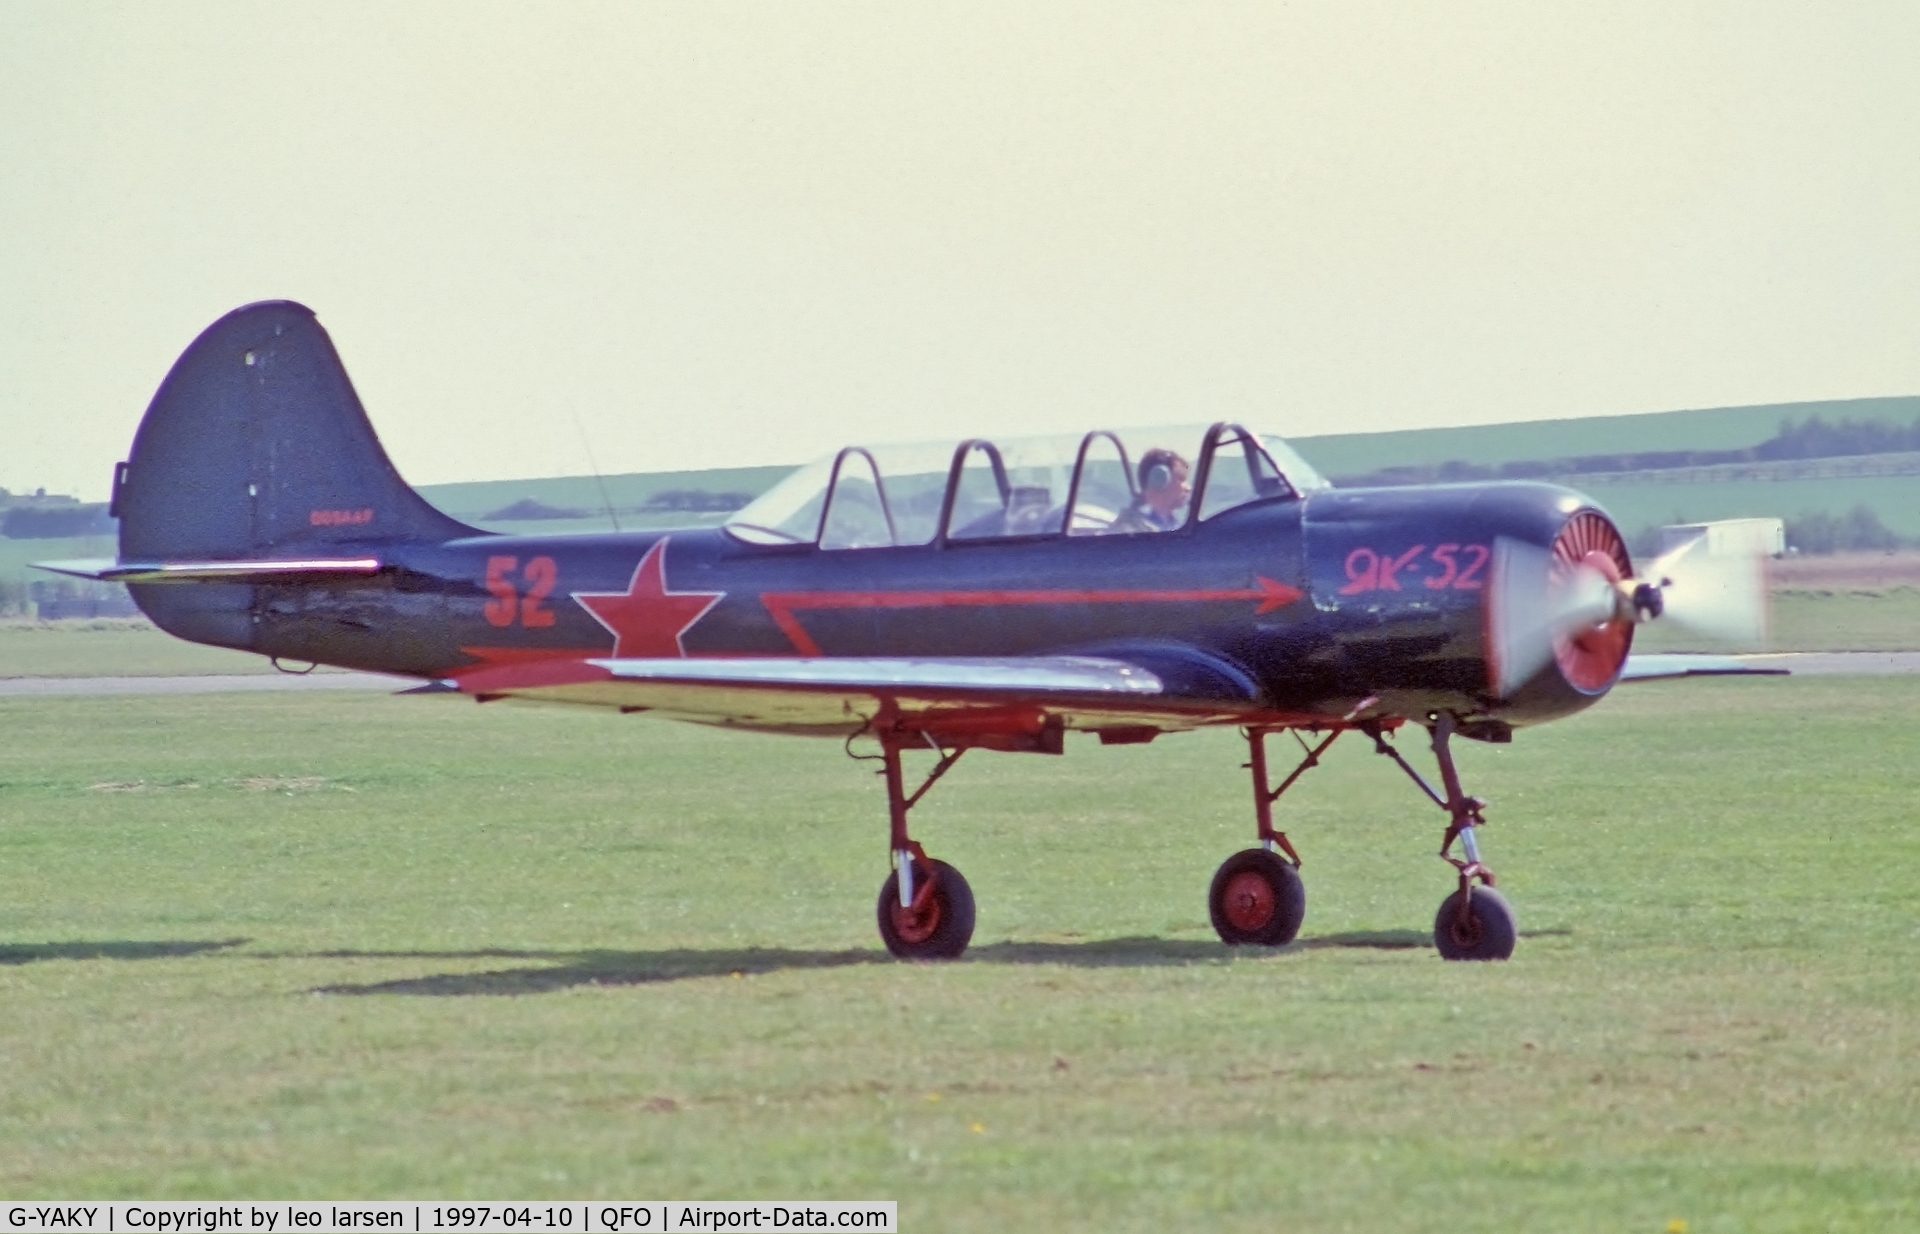 G-YAKY, 1984 Bacau Yak-52 C/N 844109, Duxford 10.4.1997